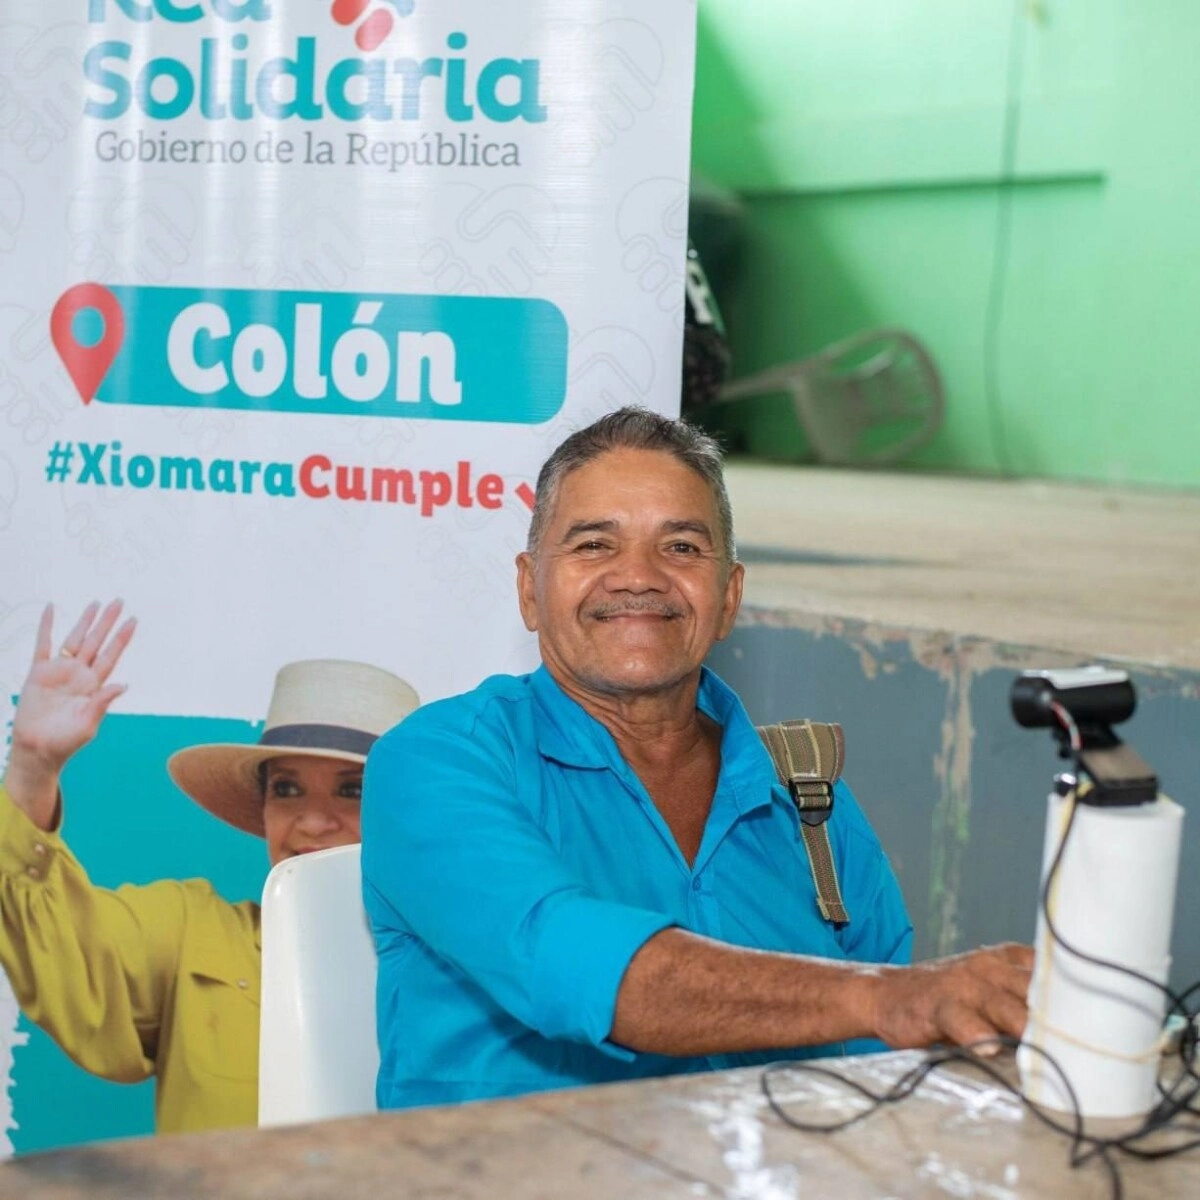 Más De 11 Millones De Lempiras Fueron Entregados Por La Red Solidaria En Colón